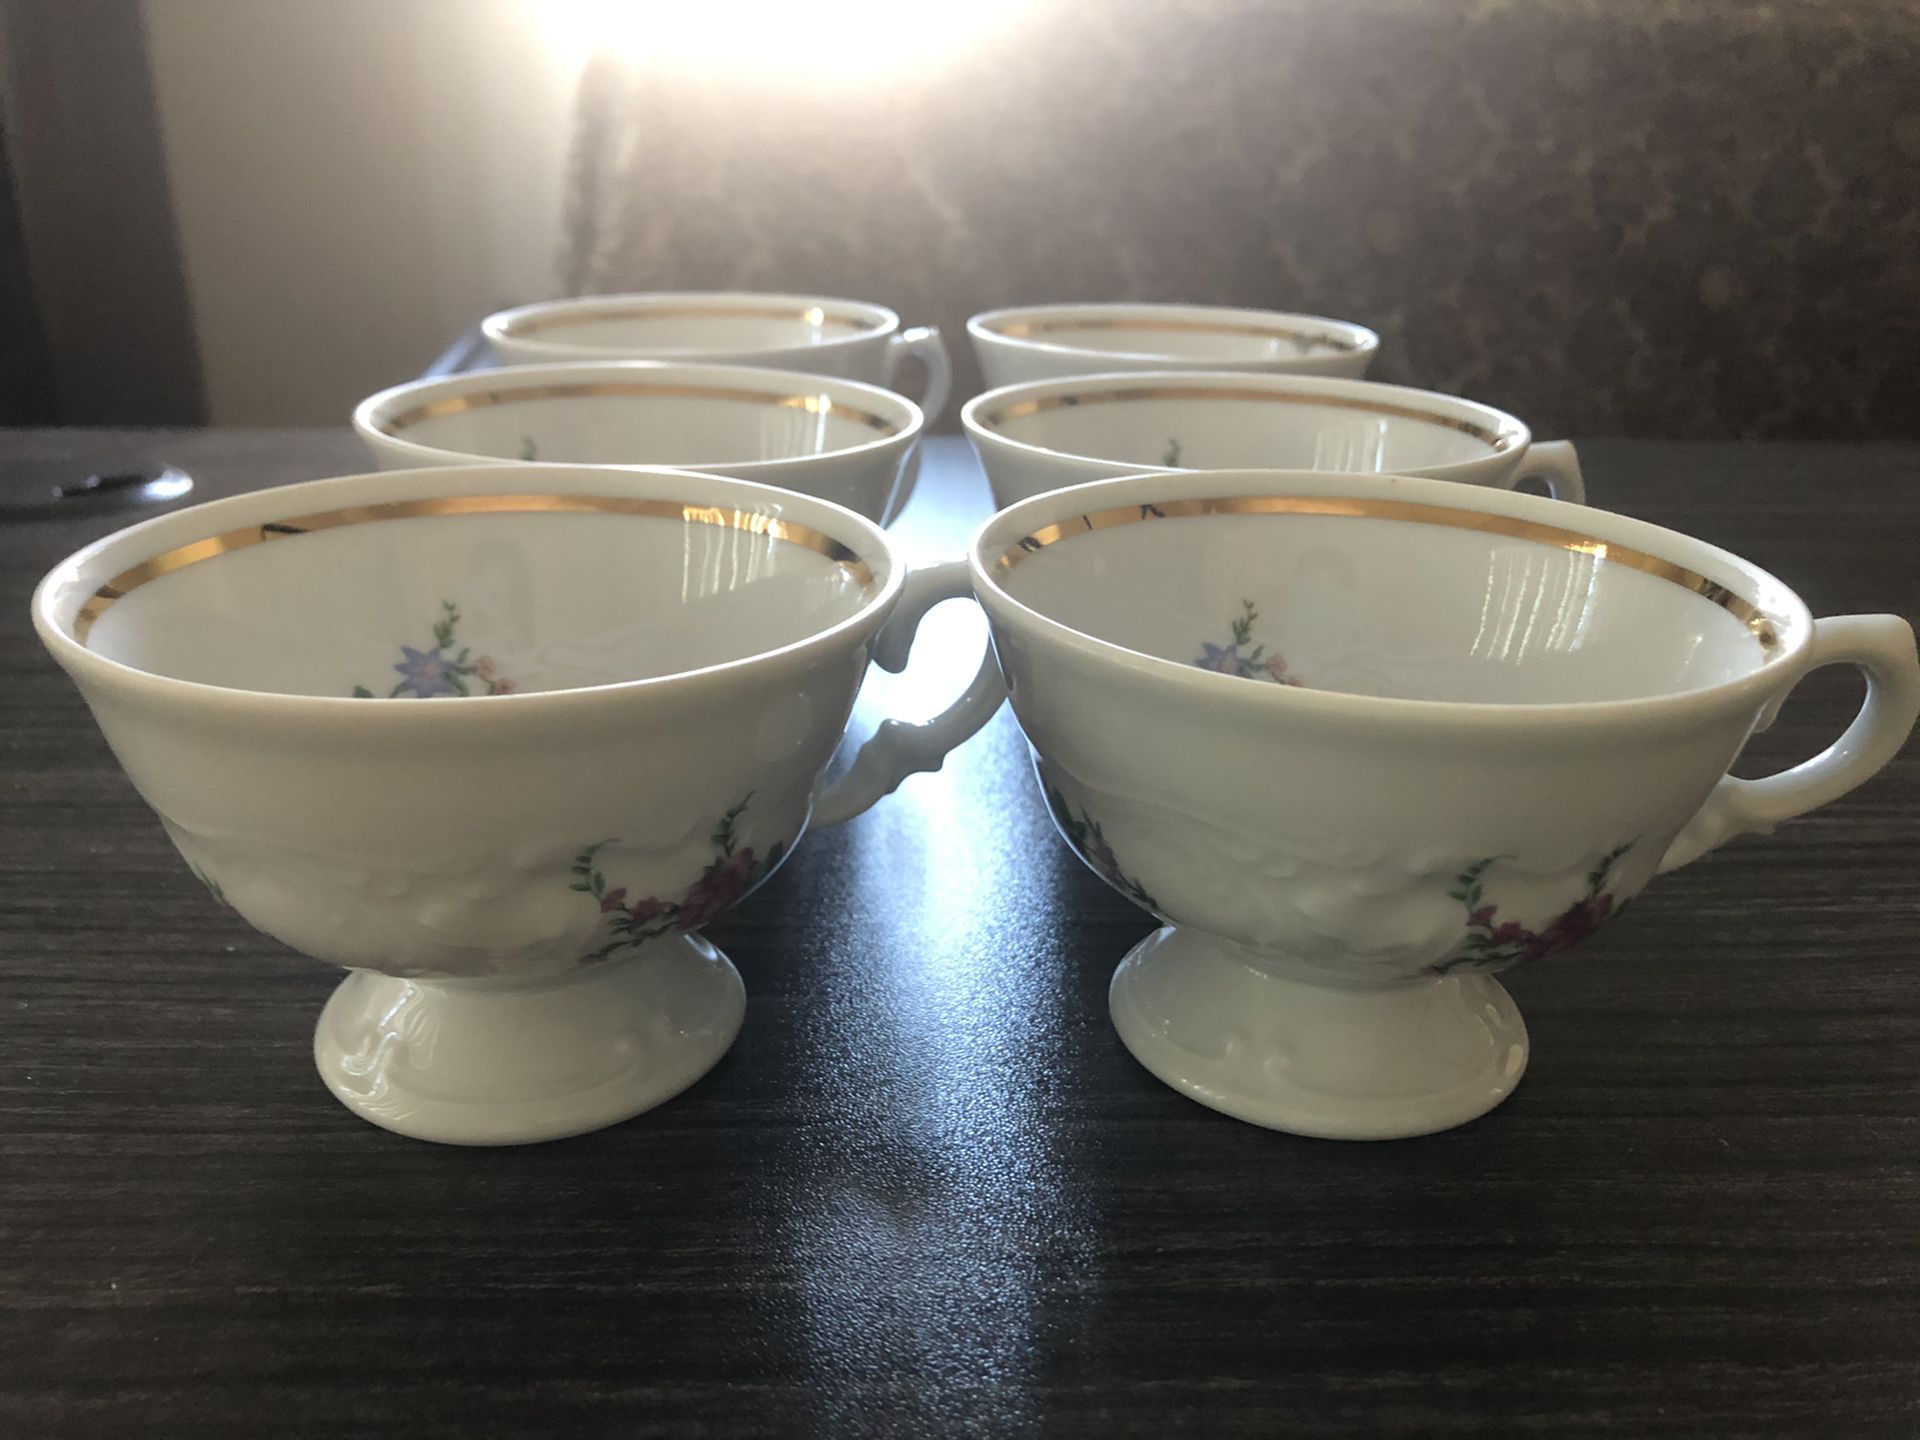 Tea/coffee cups